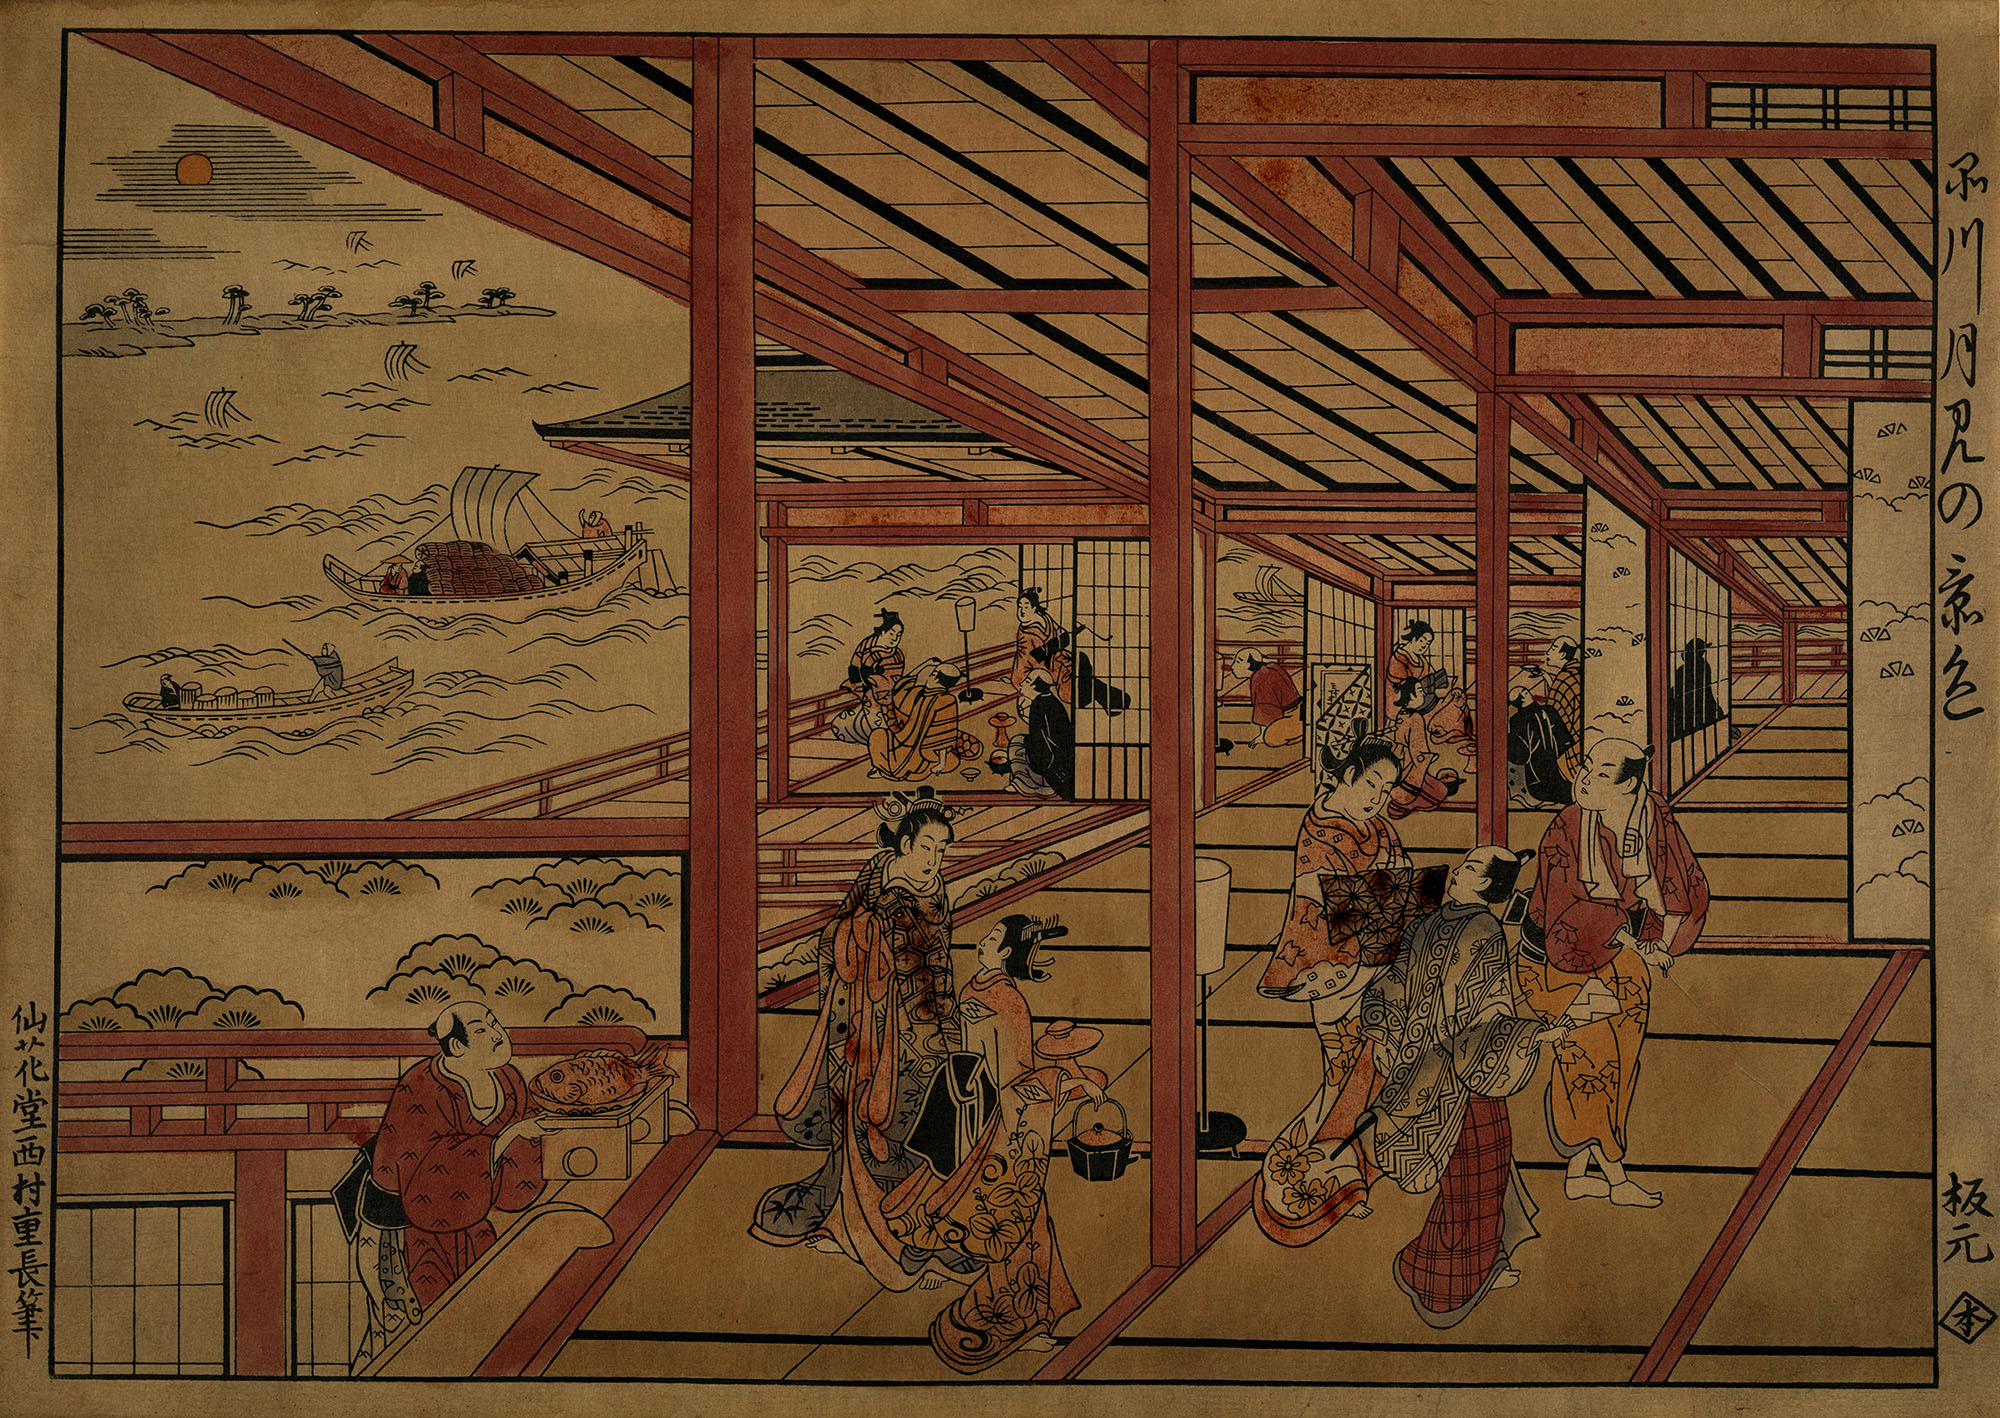 Нисимура Сигэнага. "Лунная ночь на дороге Токайдо". 1726.